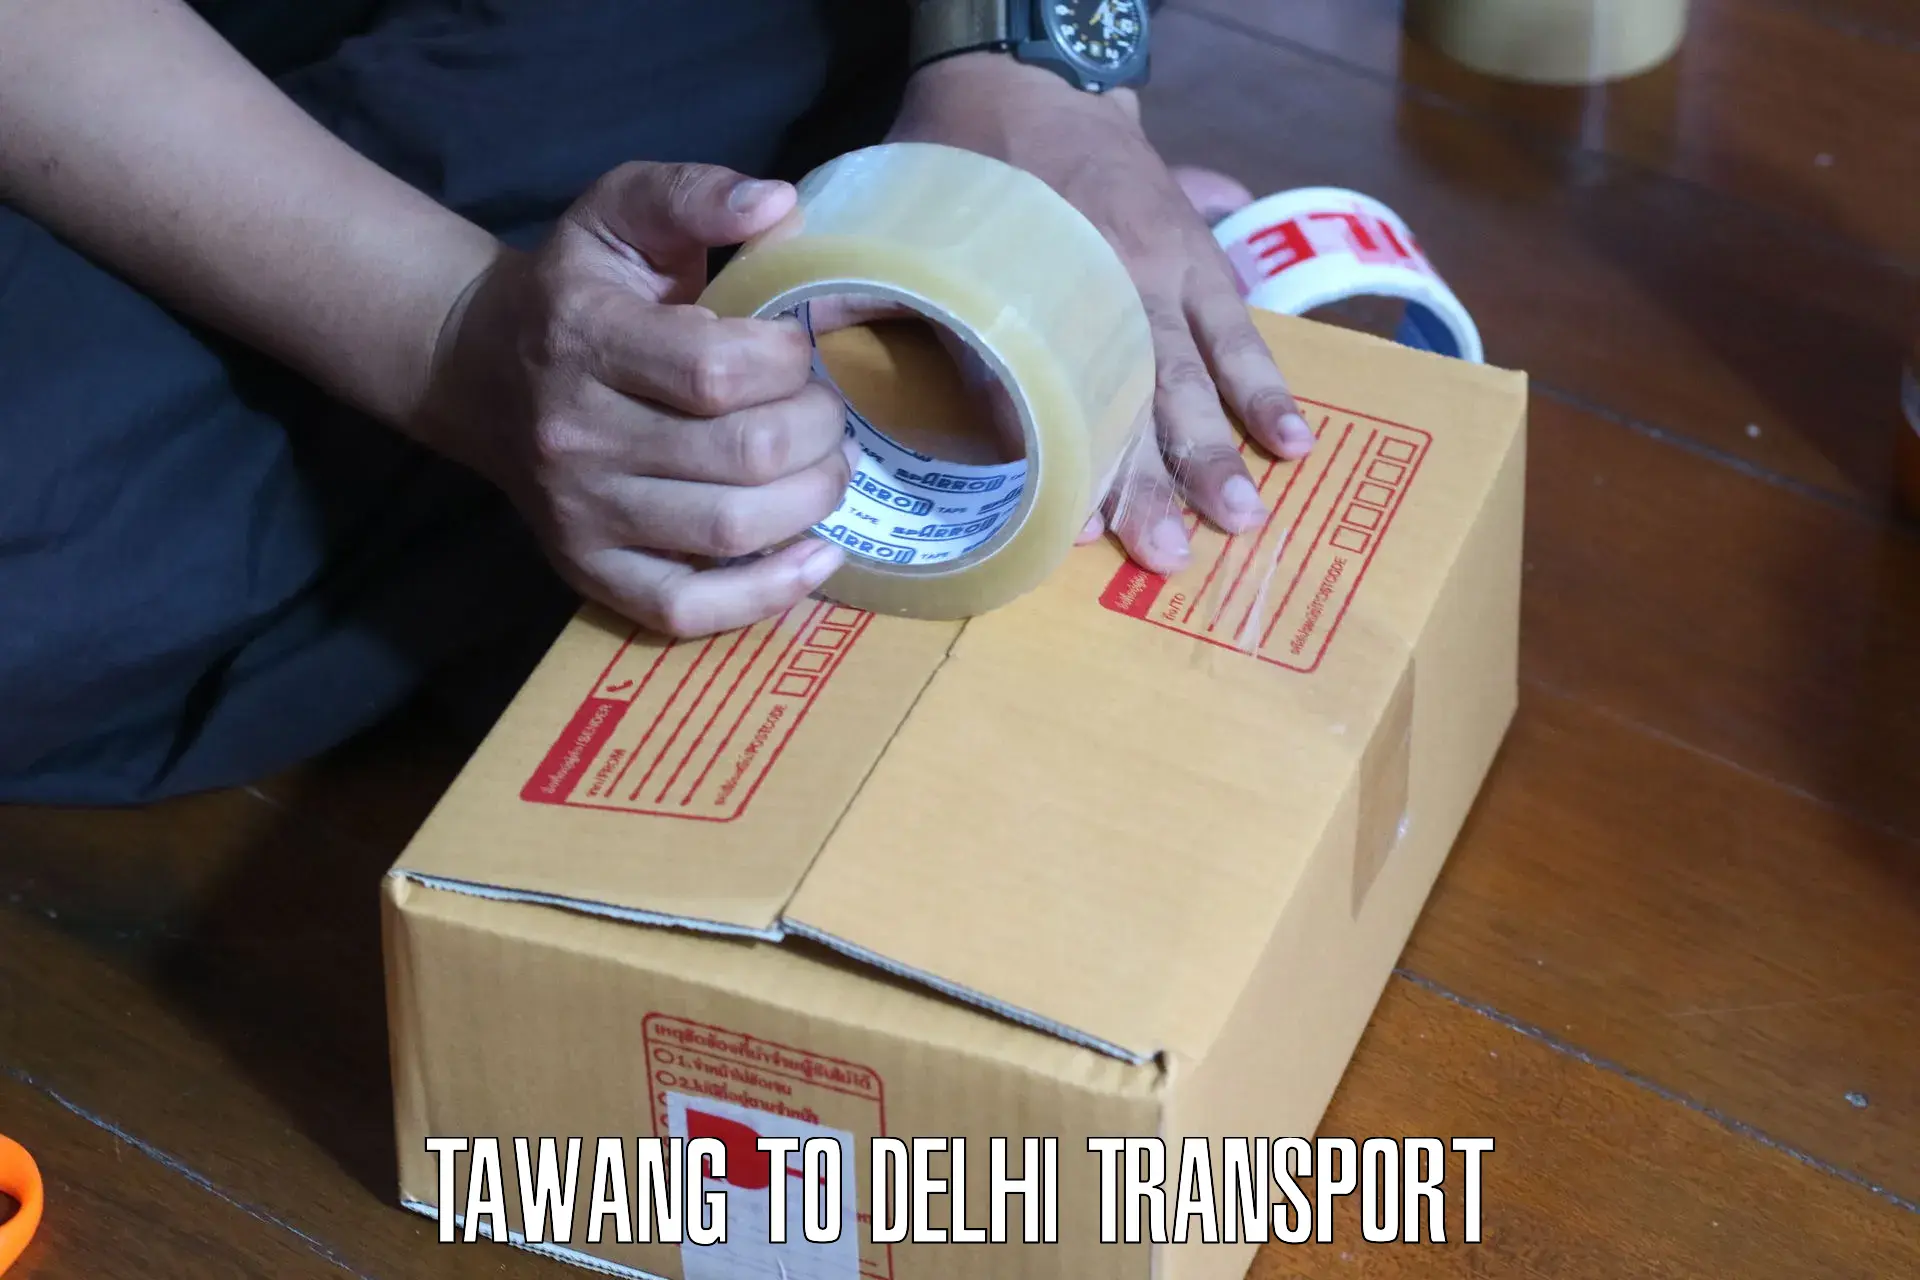 Cycle transportation service Tawang to Delhi